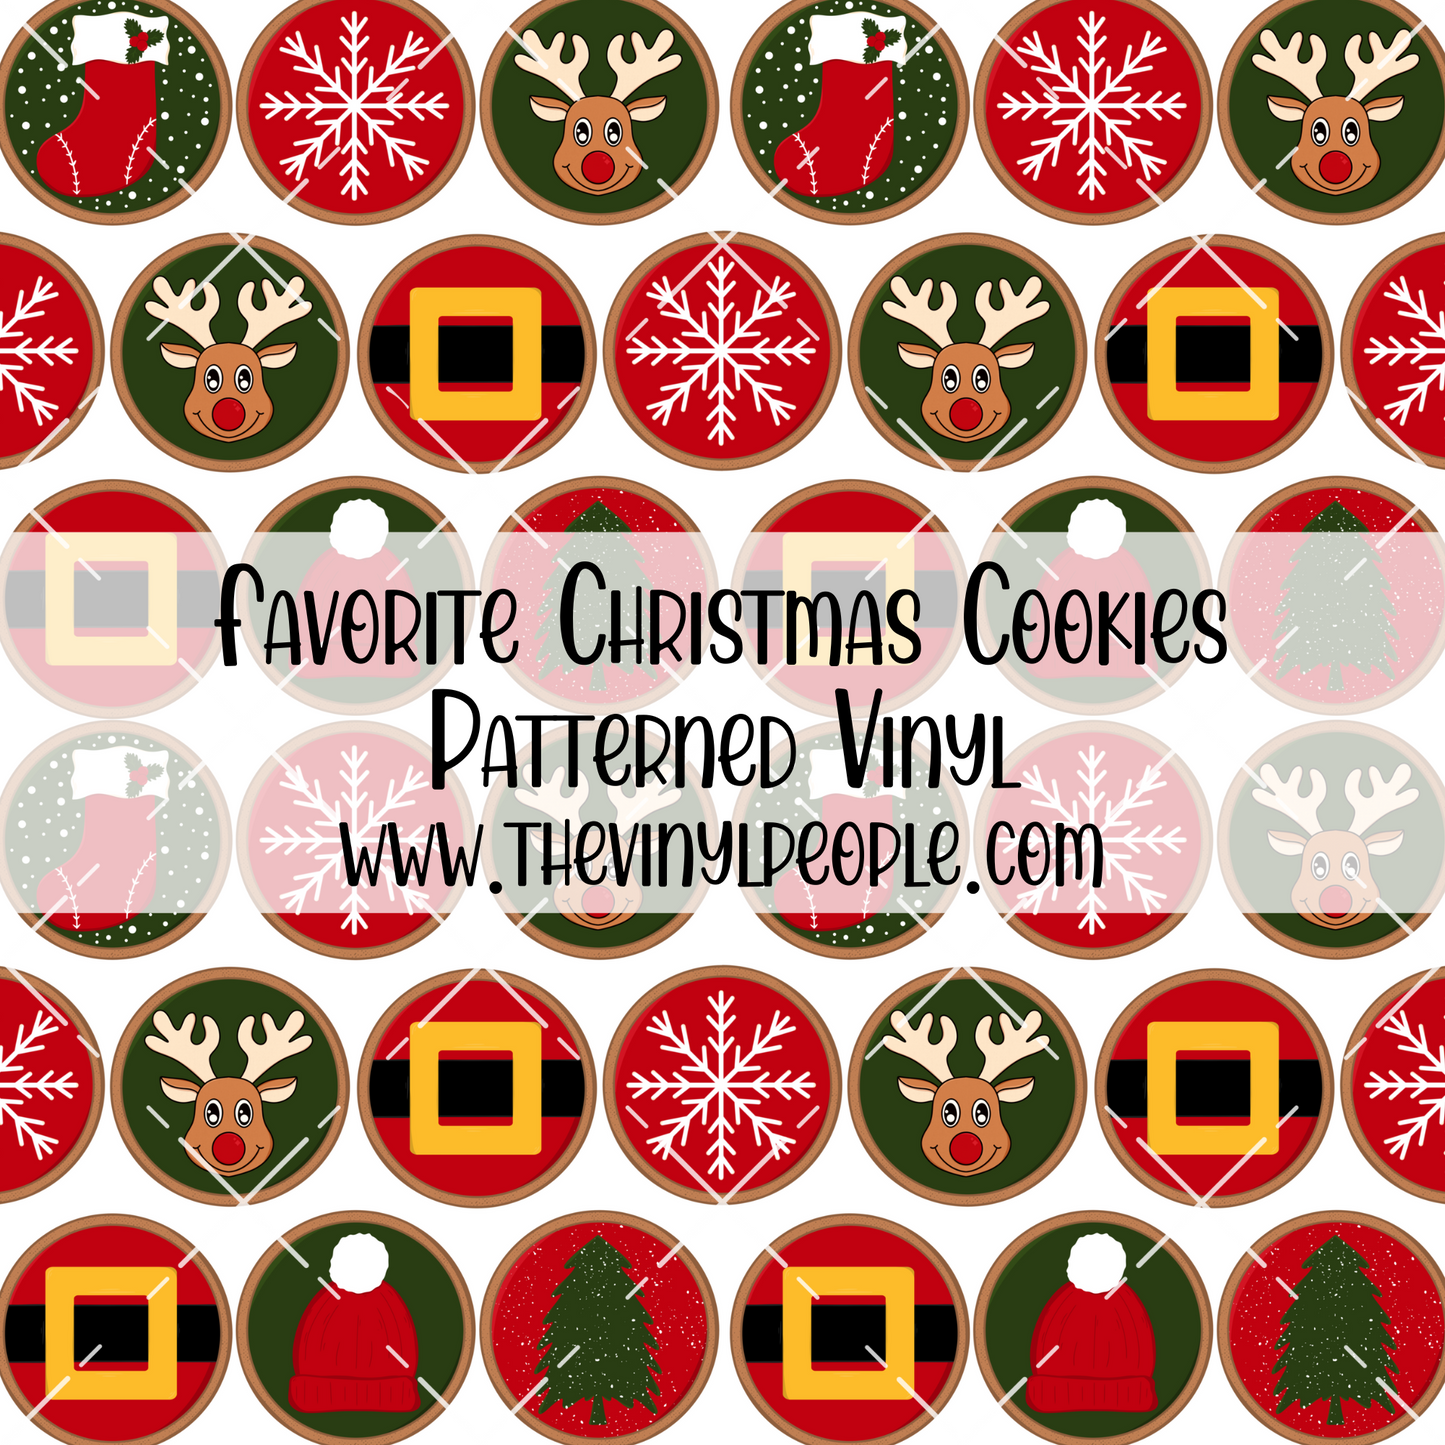 Favorite Christmas Cookies Patterned Vinyl